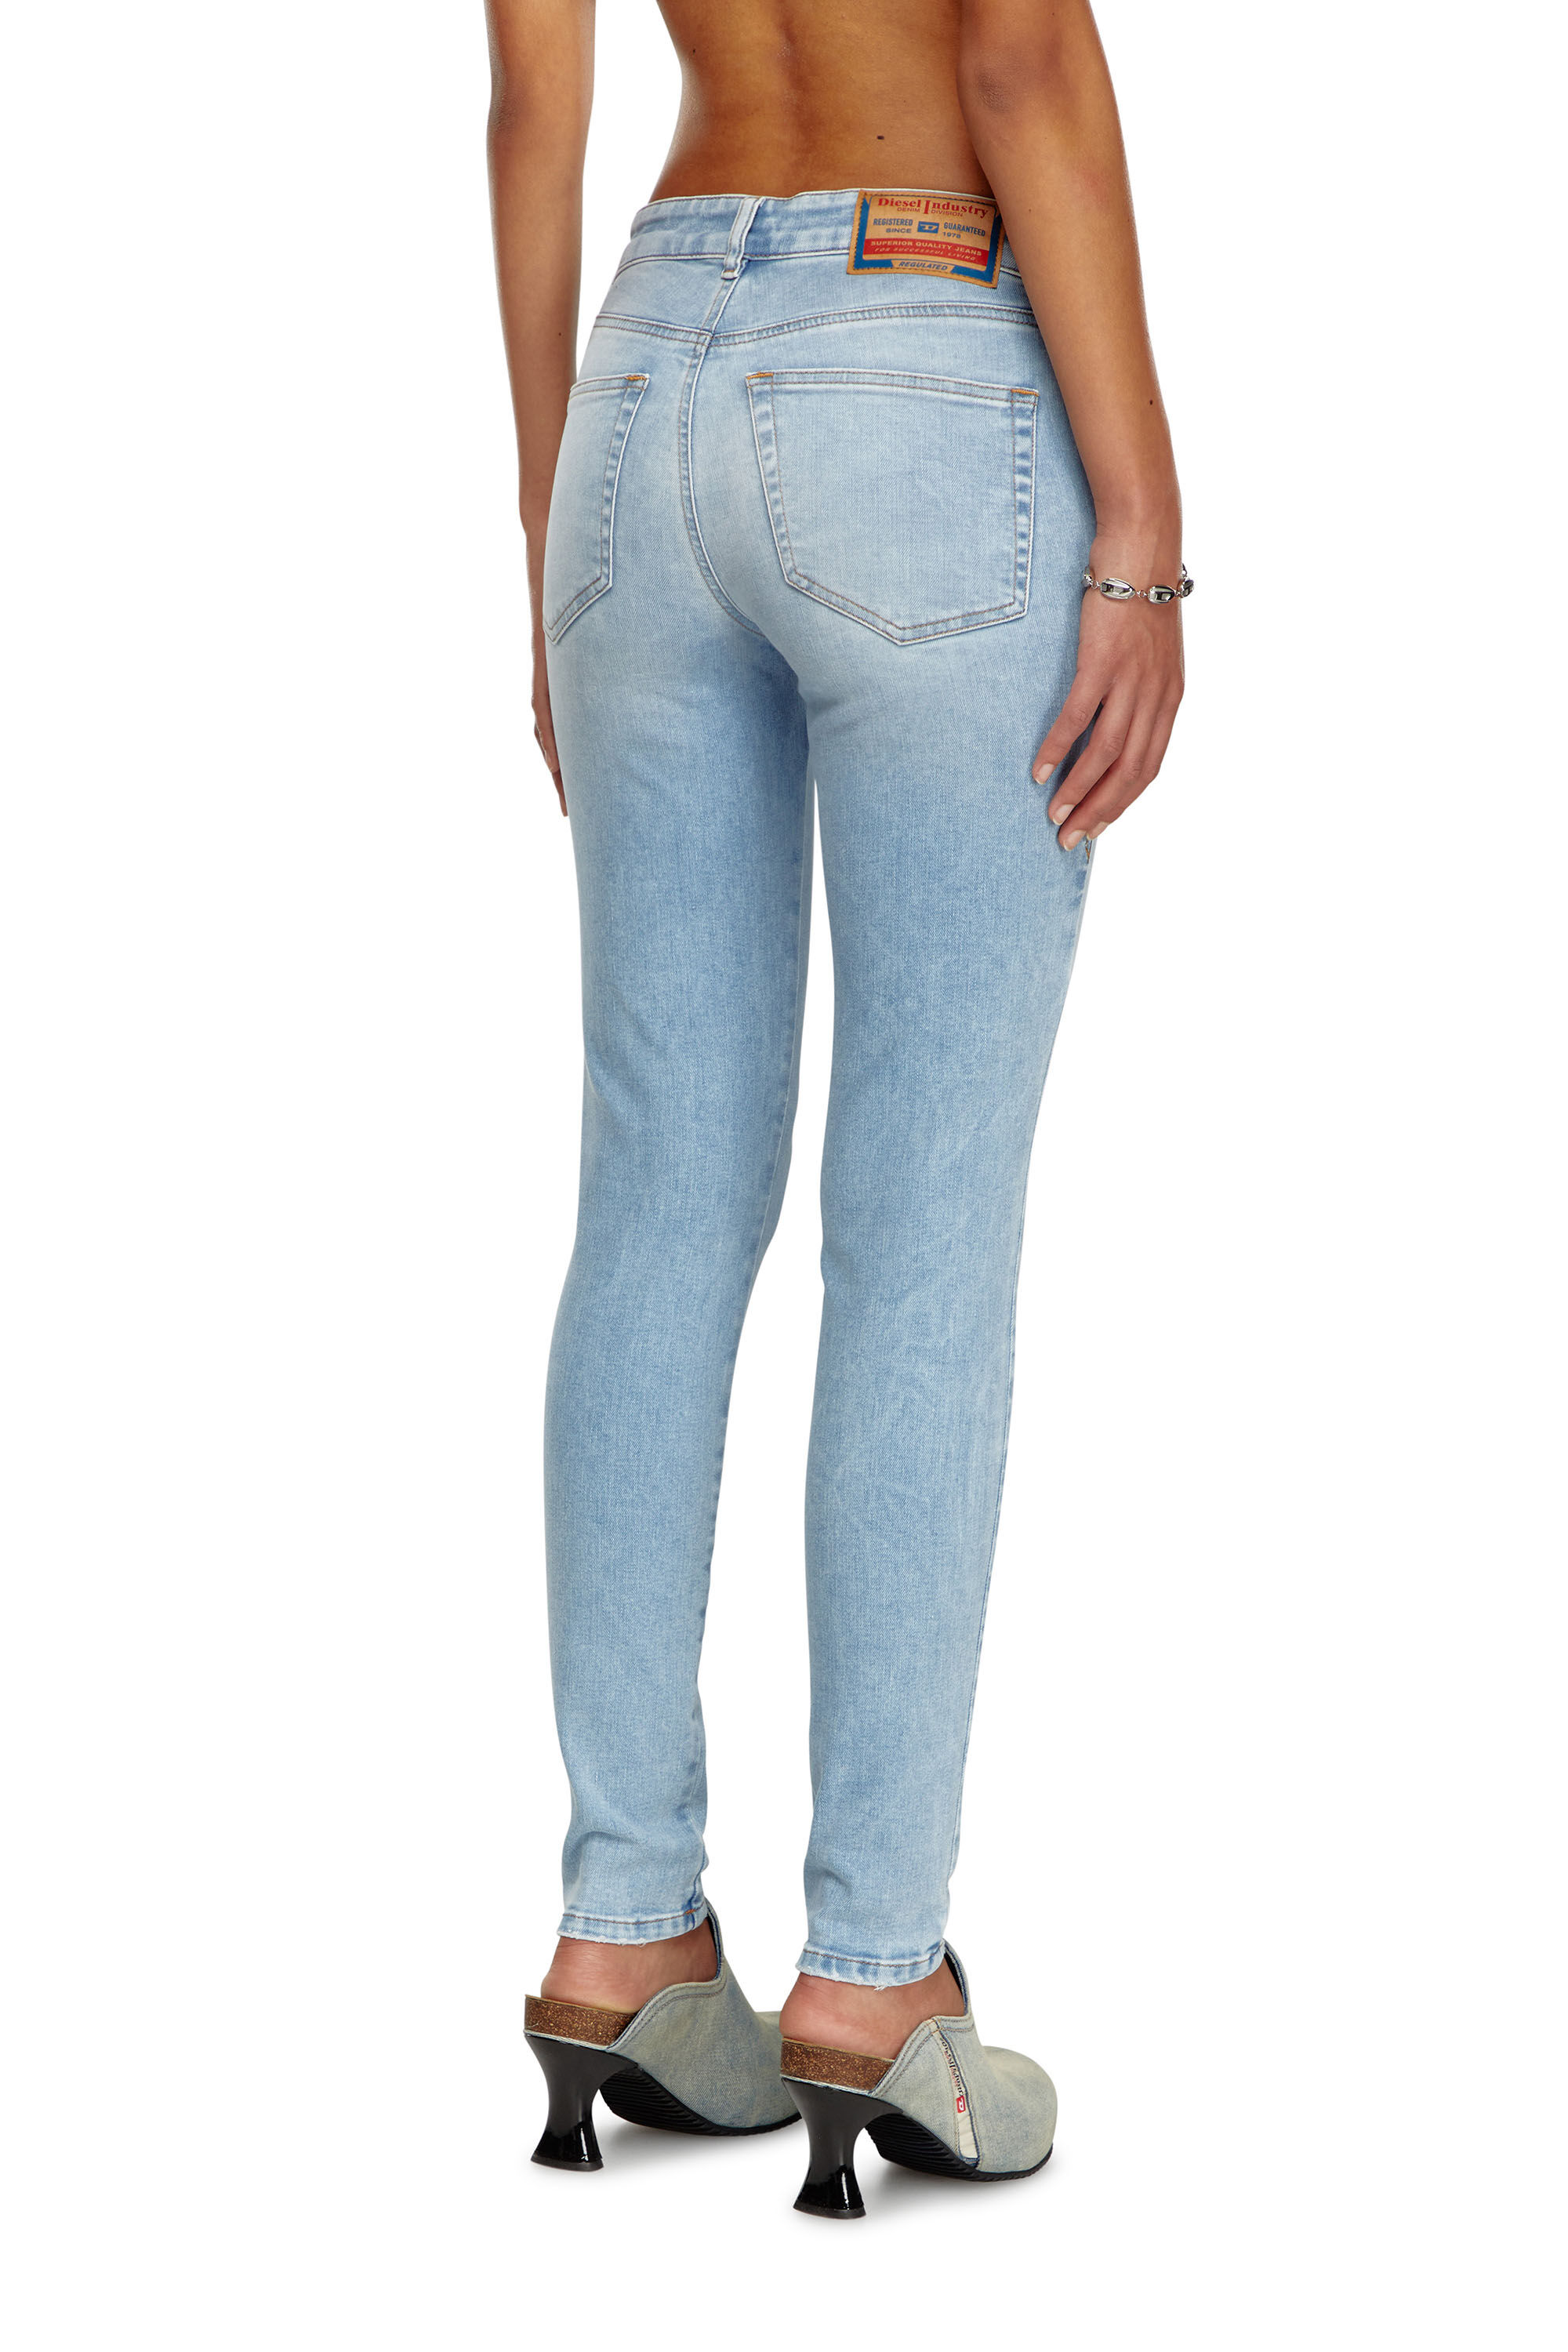 Diesel - Super skinny Jeans 2017 Slandy 09J13, Mujer Super skinny Jeans - 2017 Slandy in Azul marino - Image 5